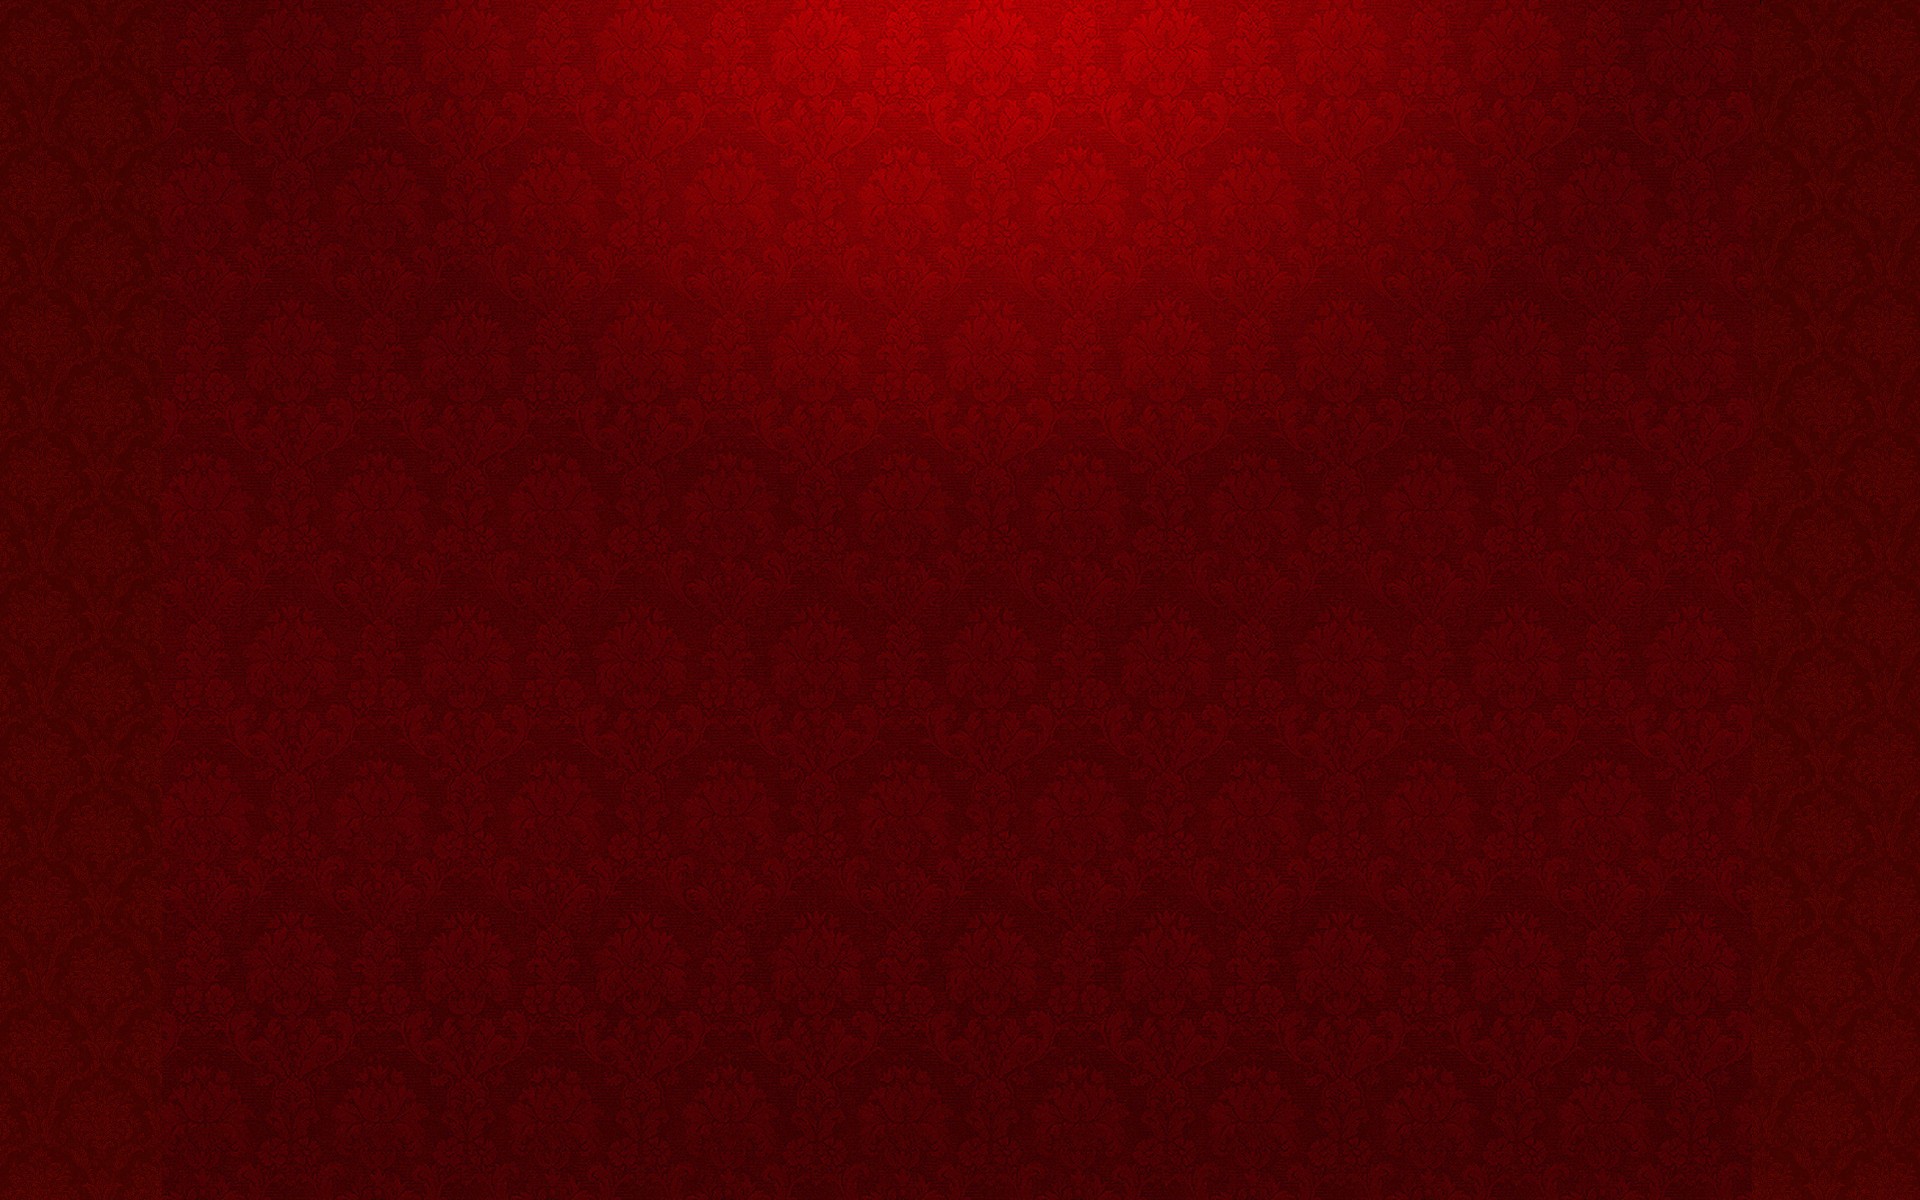 Wallpaper Patterns Red Damask Image